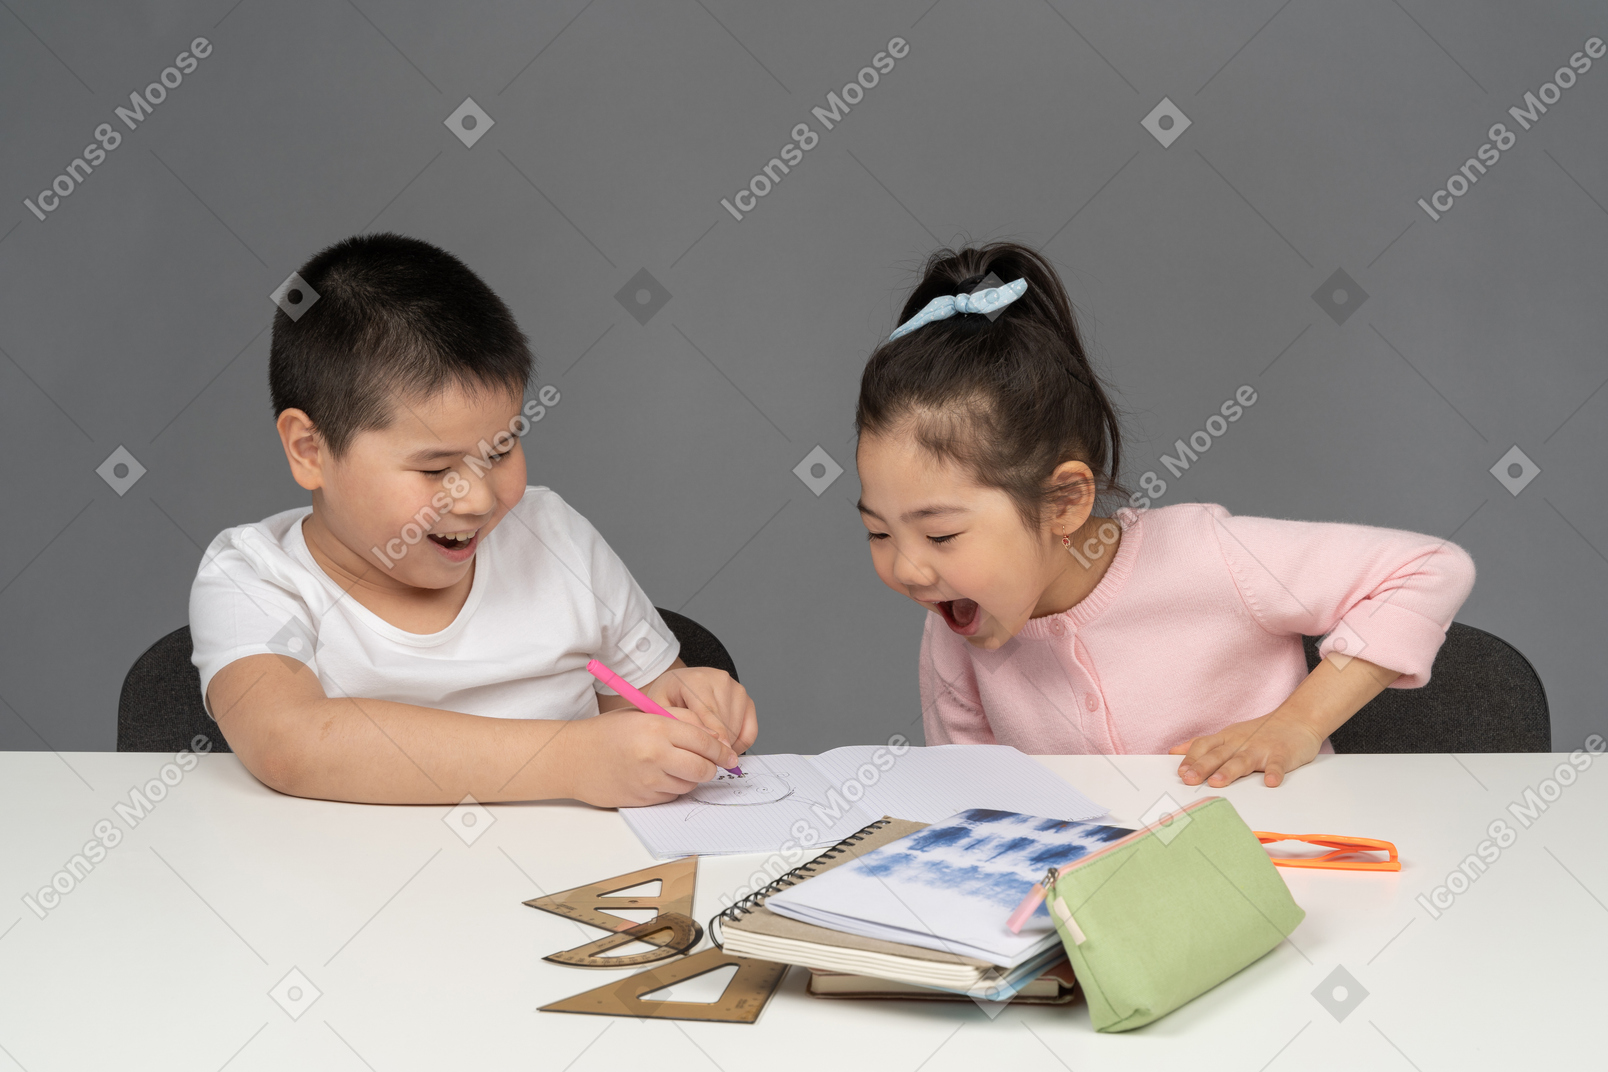 宿題をしながら笑う男の子と女の子